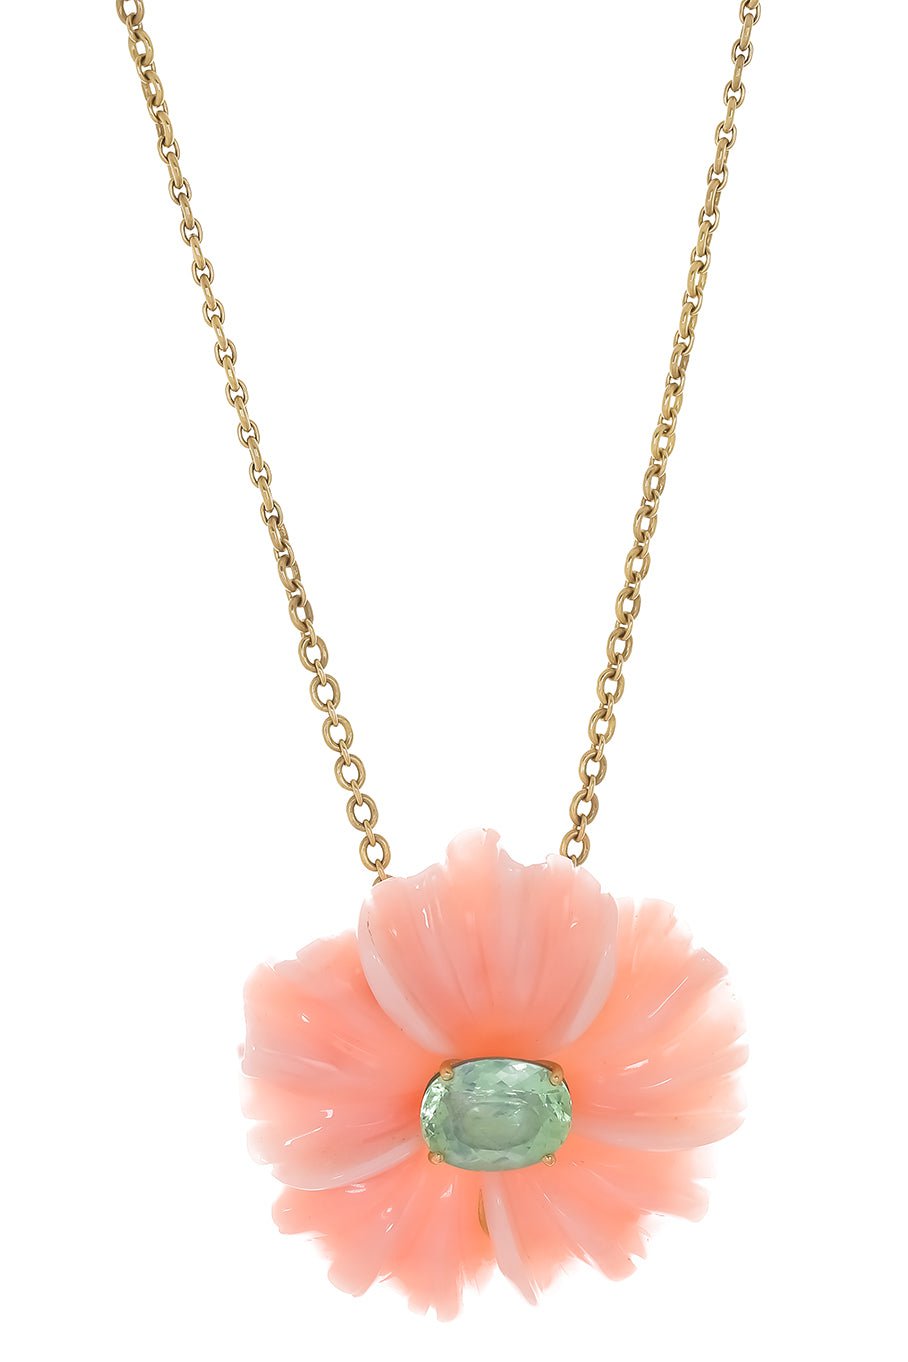 Pink Opal & Green Tourmaline Flower Necklace JEWELRYFINE JEWELNECKLACE O IRENE NEUWIRTH JEWELRY   